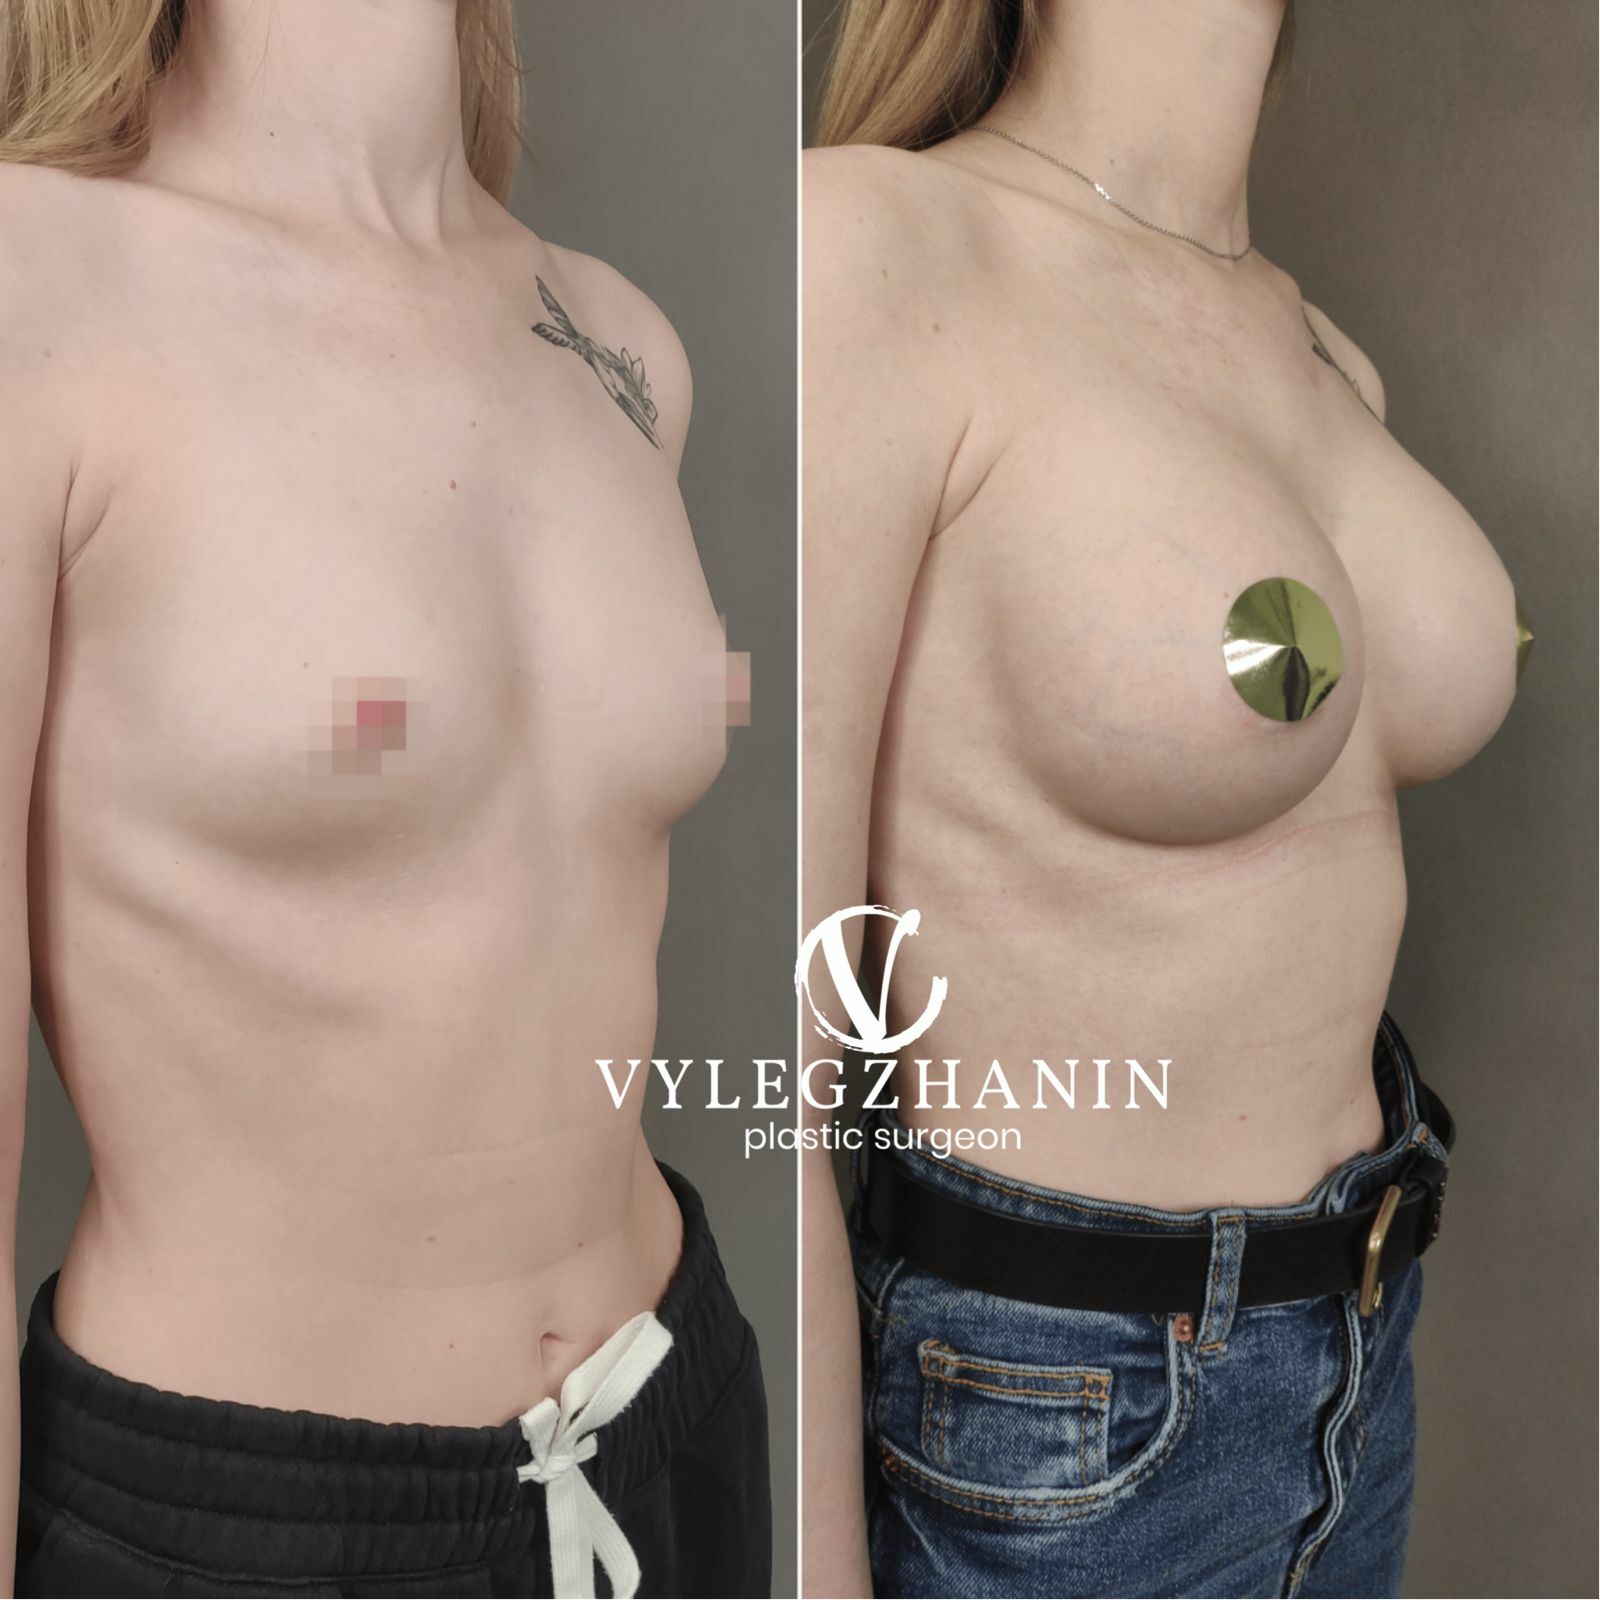 разные импланты на одну грудь фото 106